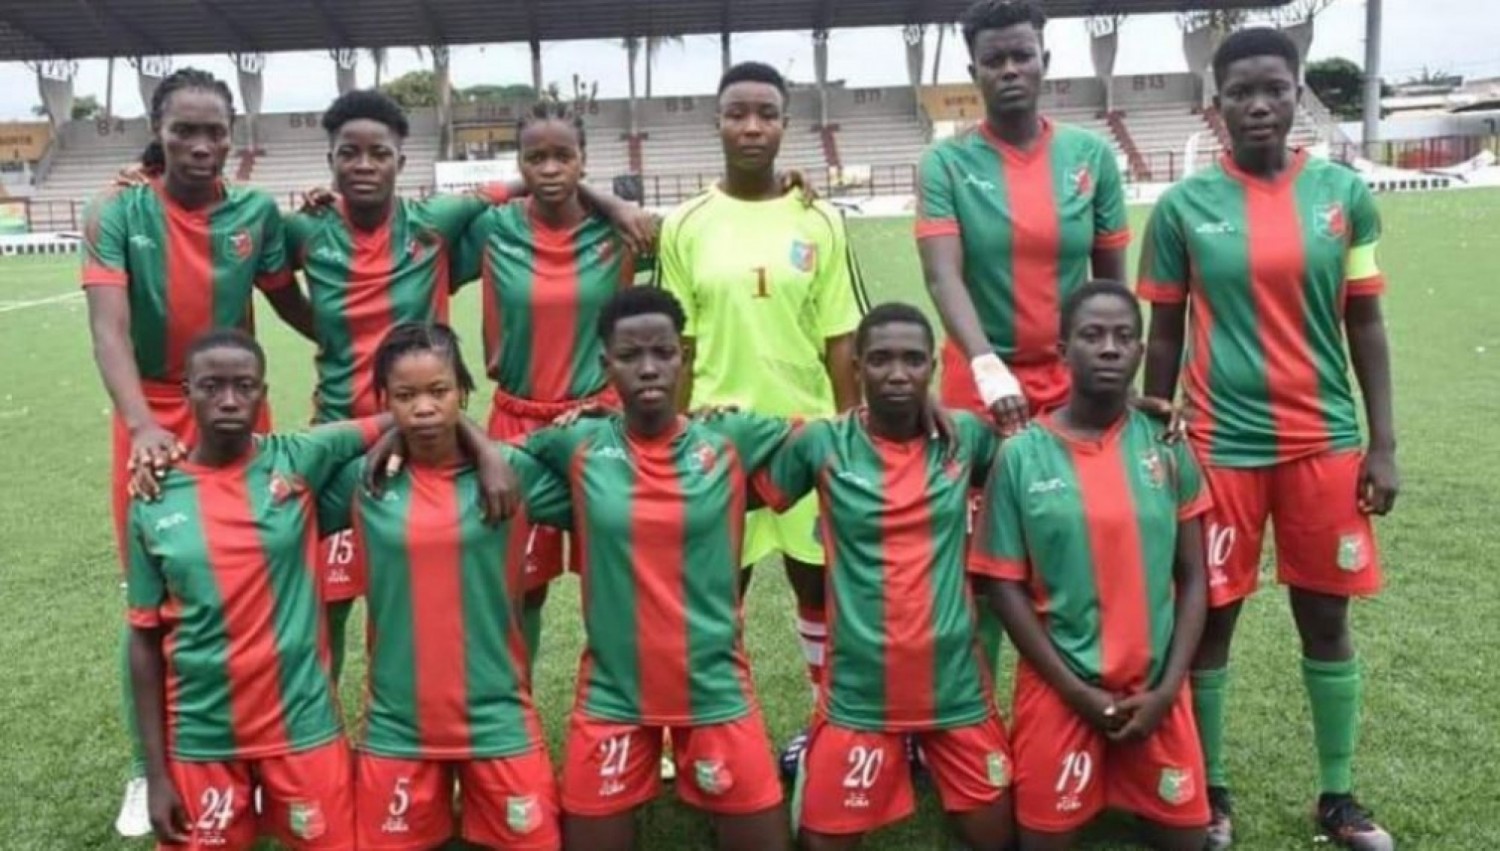 Côte d'Ivoire : Football féminin, affaire d'harcèlement sexuel à l'Africa sport, la justice pourrait être saisie